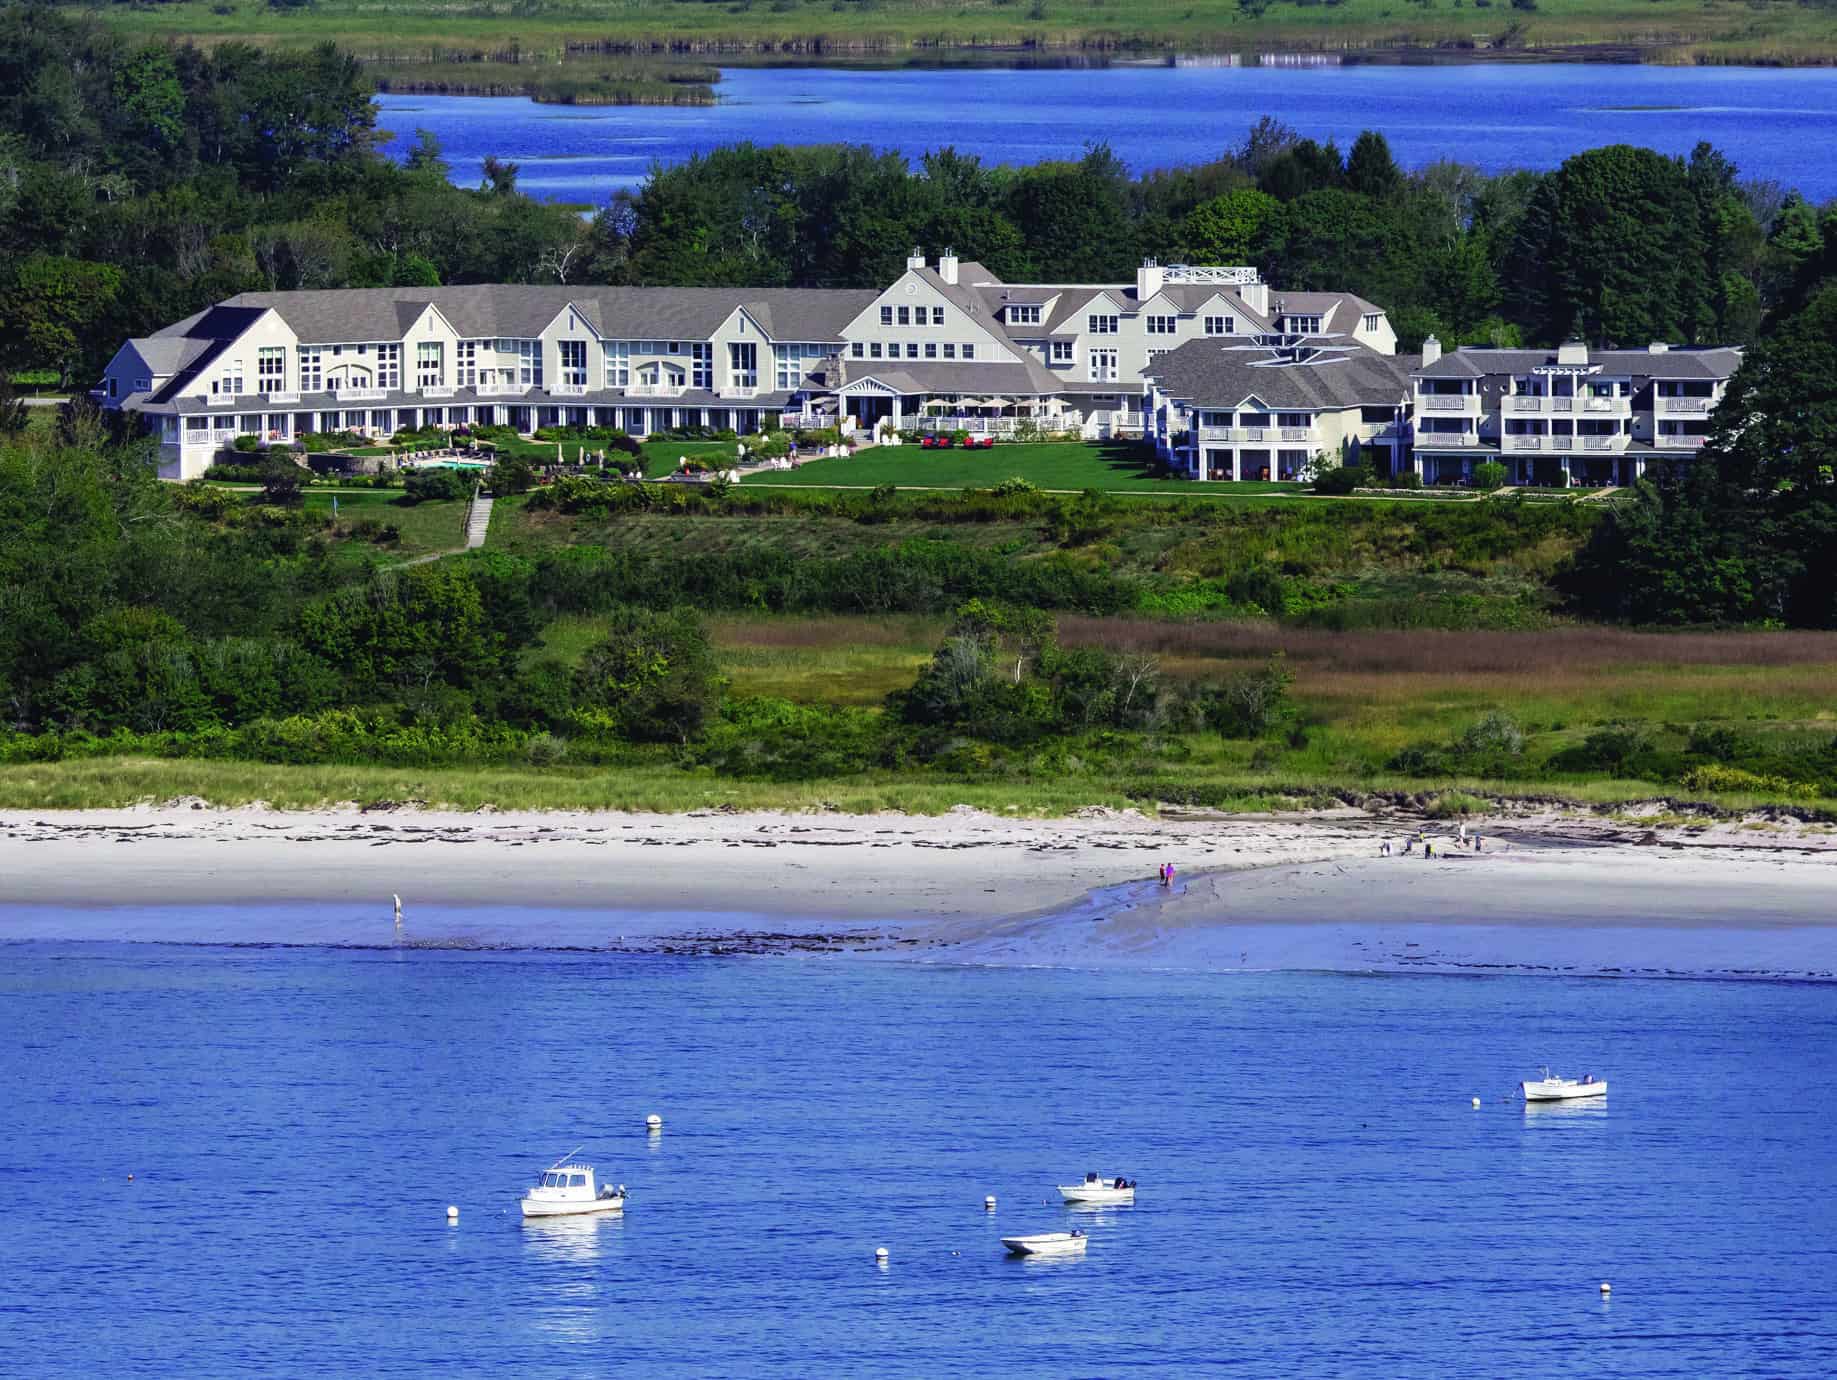 A very large white Portland Maine inn faces the ocean under a sunny sky.